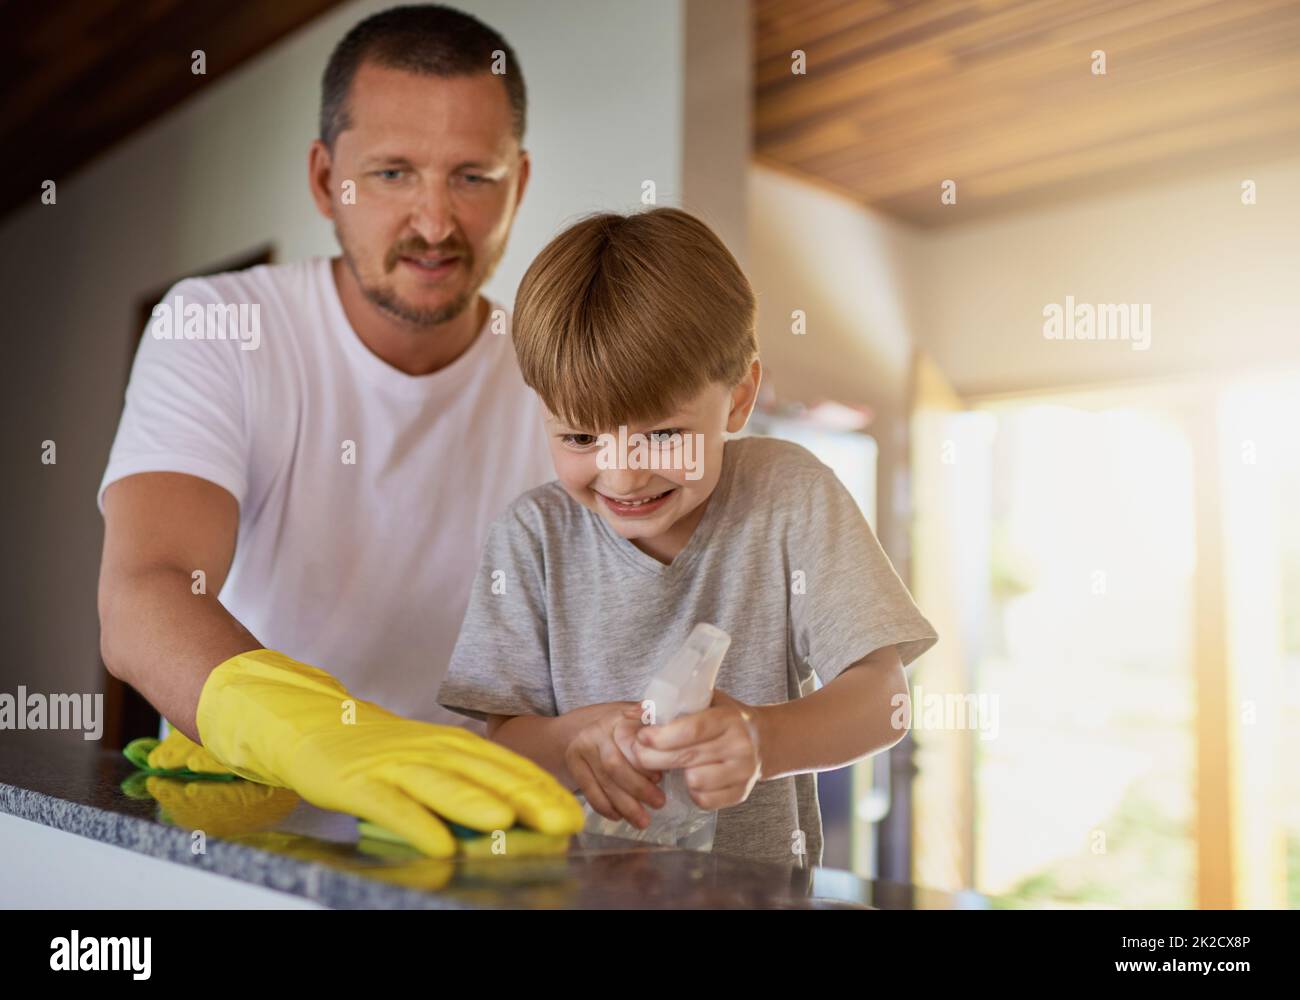 Lasst uns diesen Haushalt reinigen. Aufnahme eines Vaters und seines kleinen Sohnes, die zu Hause gemeinsam arbeiten. Stockfoto